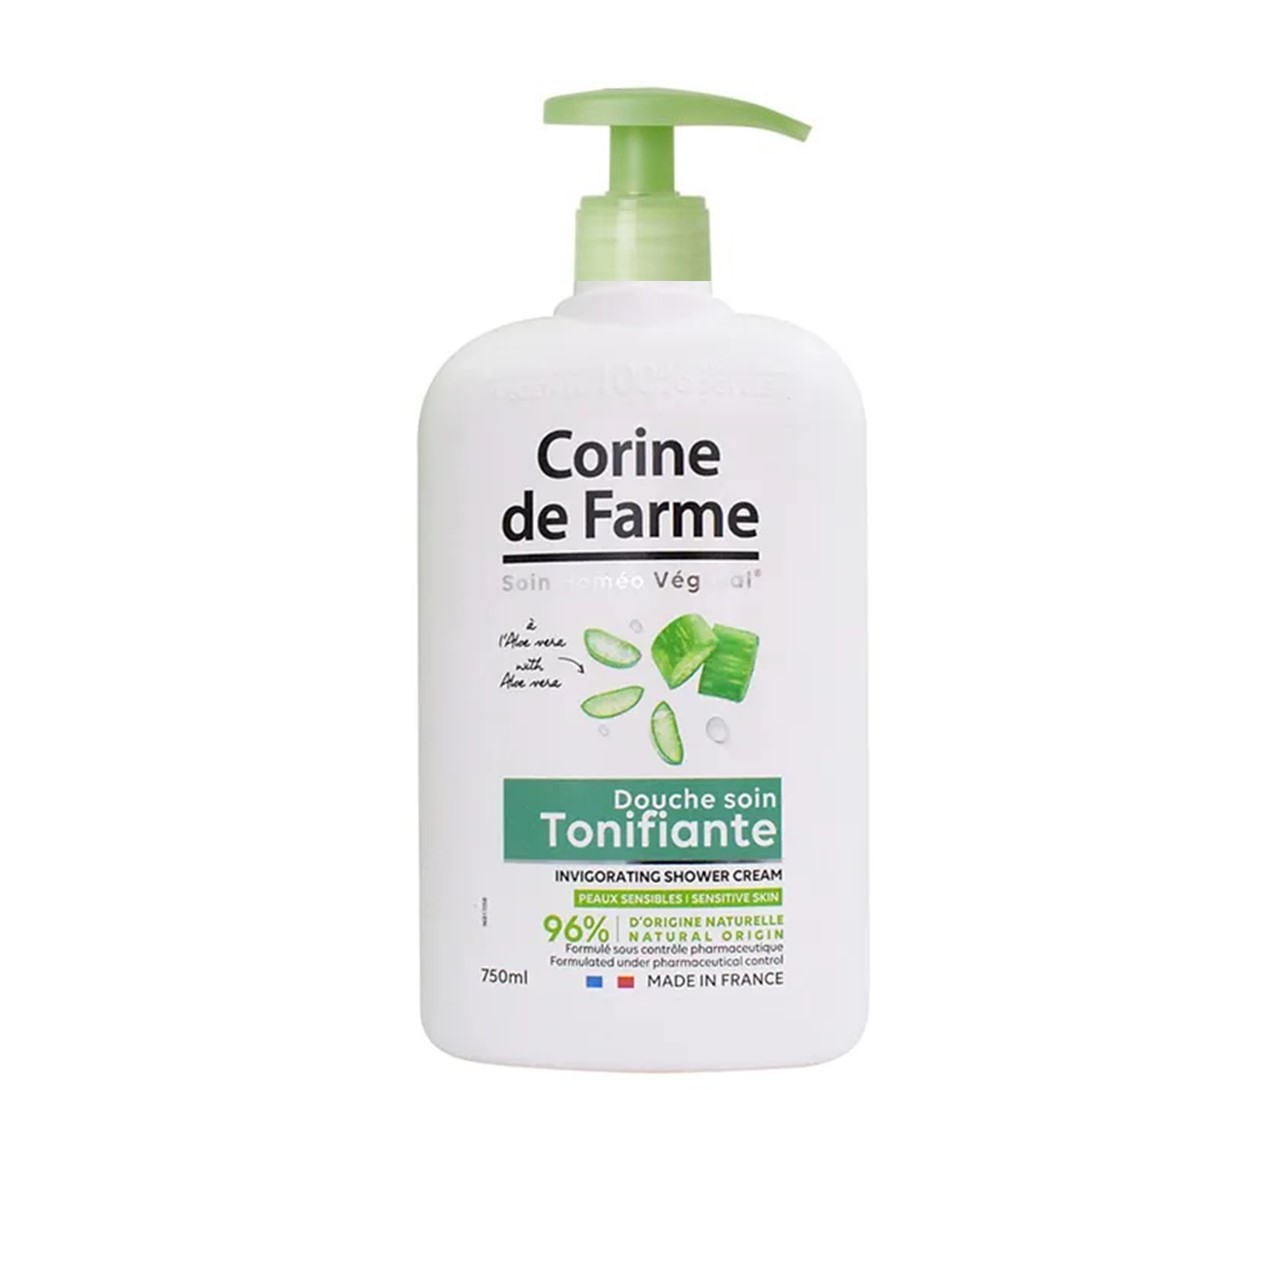 Corine de Farme Invigorating Shower Cream With Aloe Vera 750ml